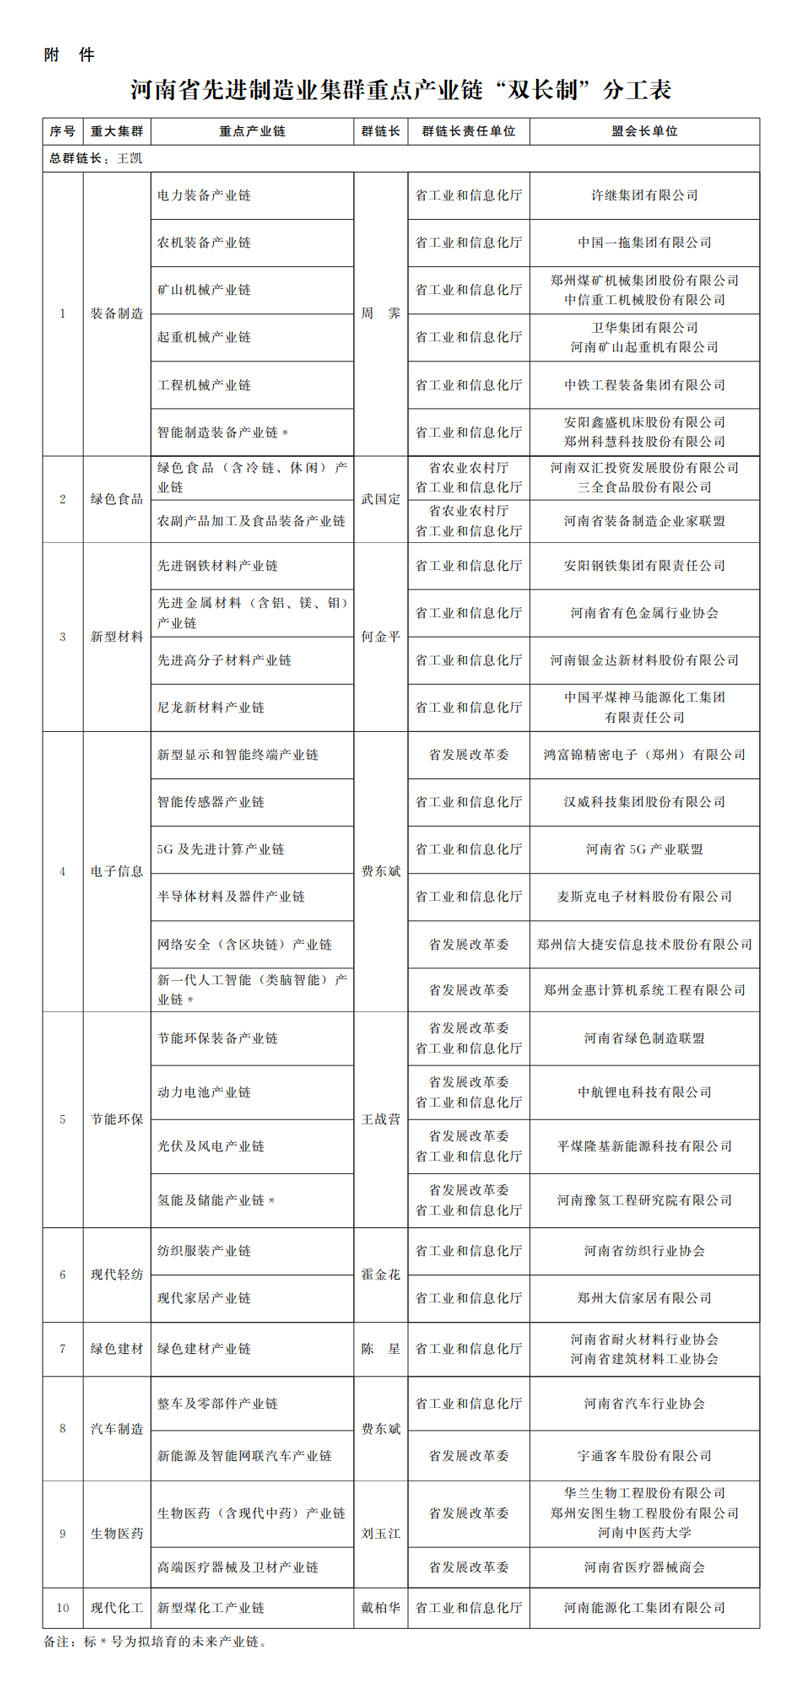 河南省先进制造业集群重点产业链“双长制”分工表